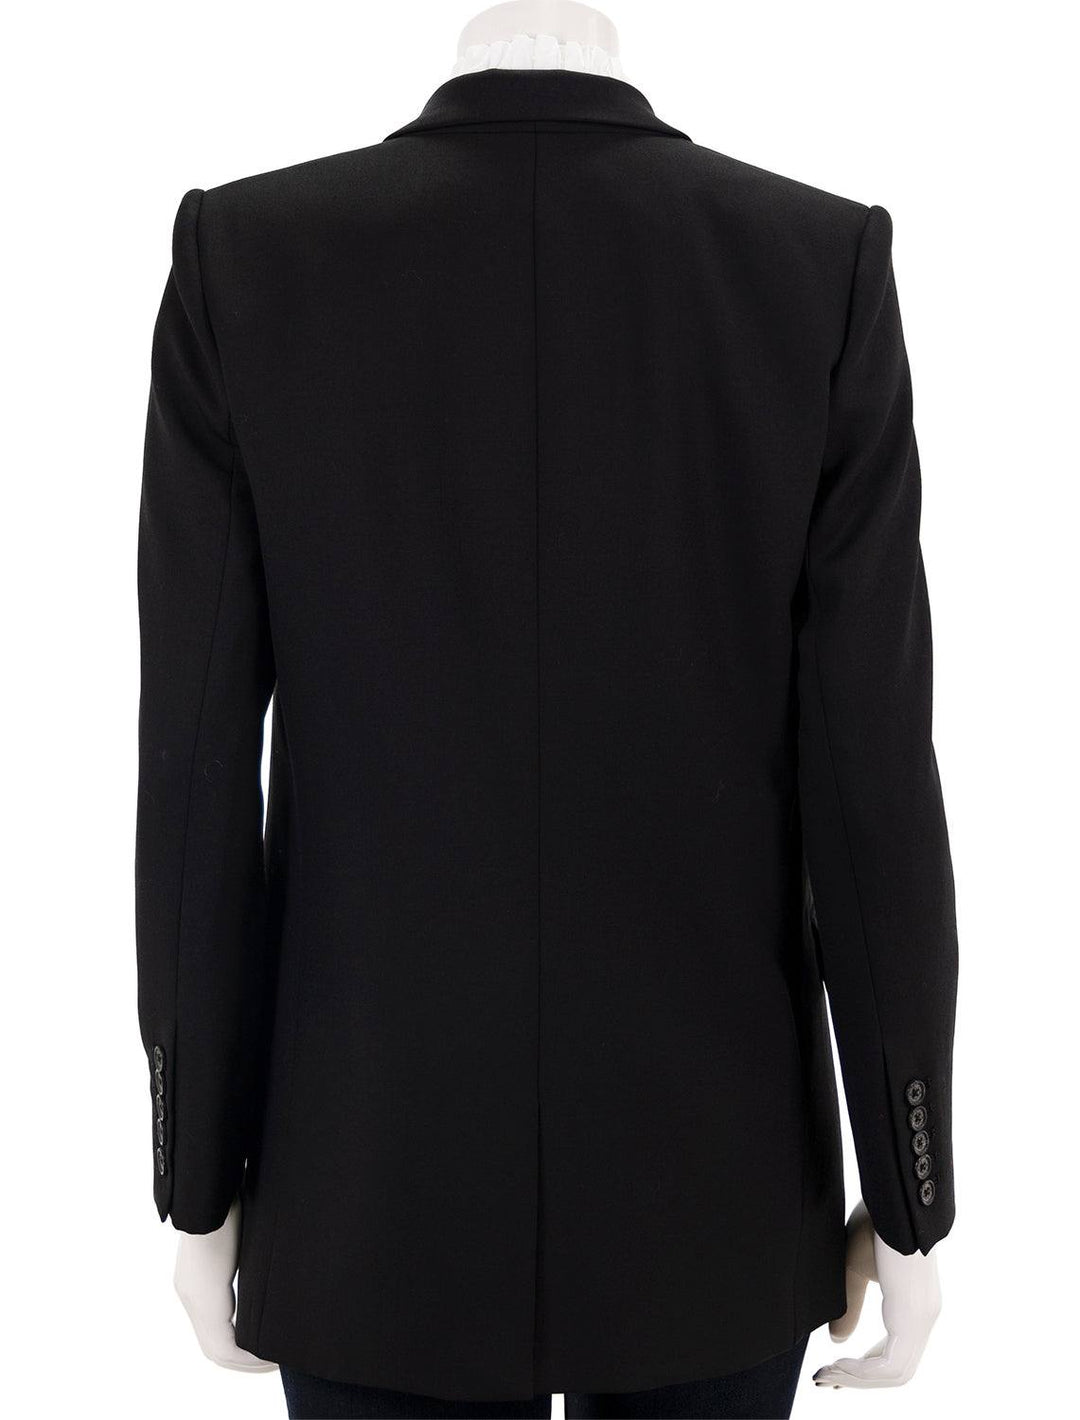 Back view of Nili Lotan's diane blazer in black.